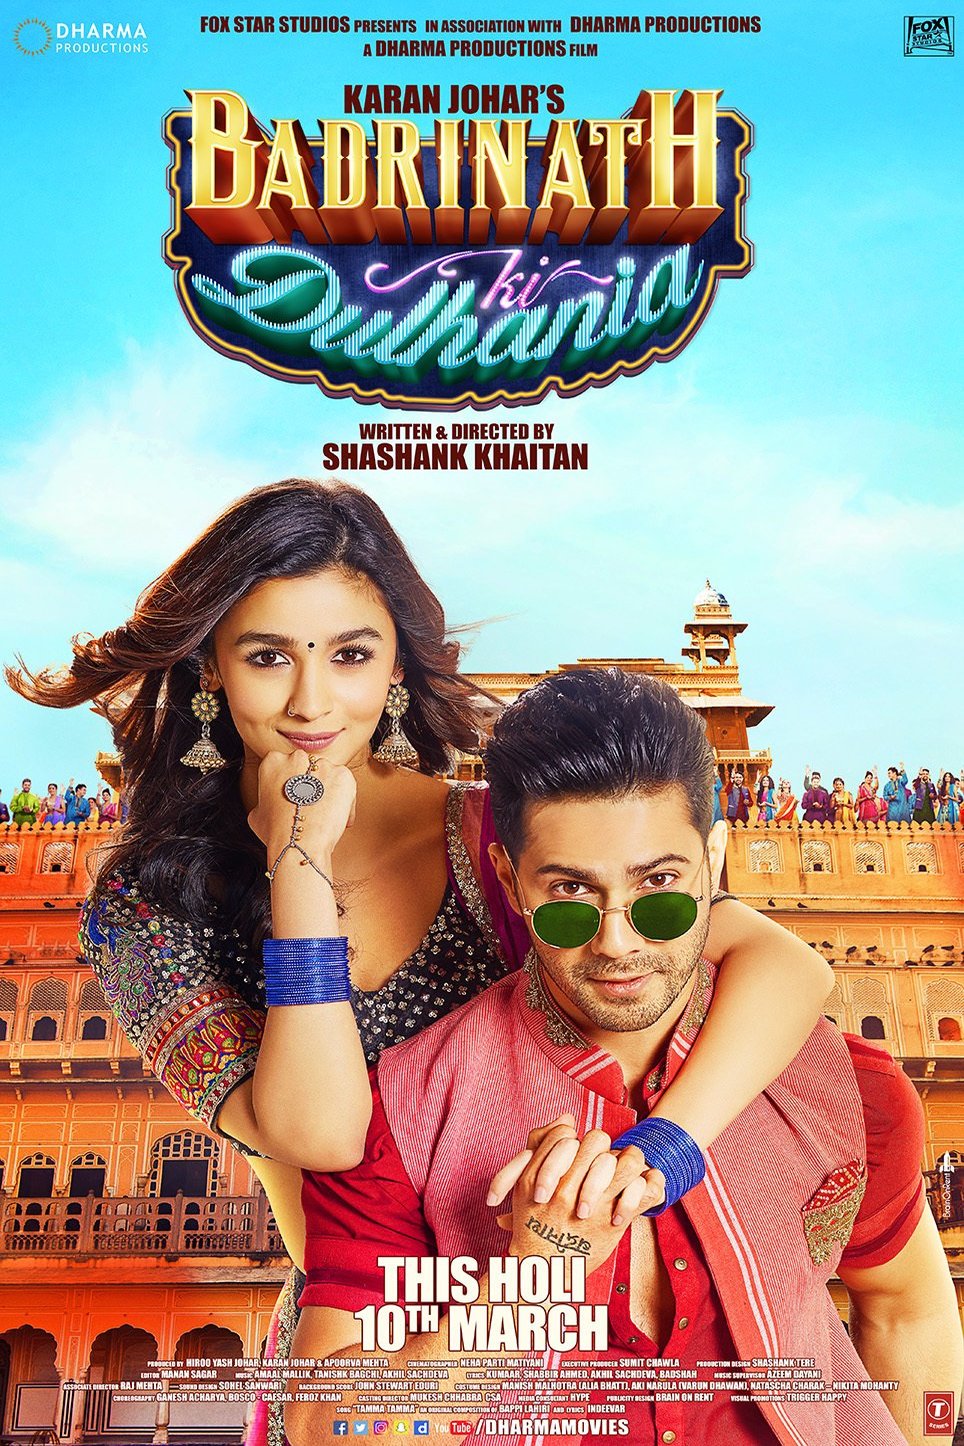 Poster of the movie Badrinath Ki Dulhania